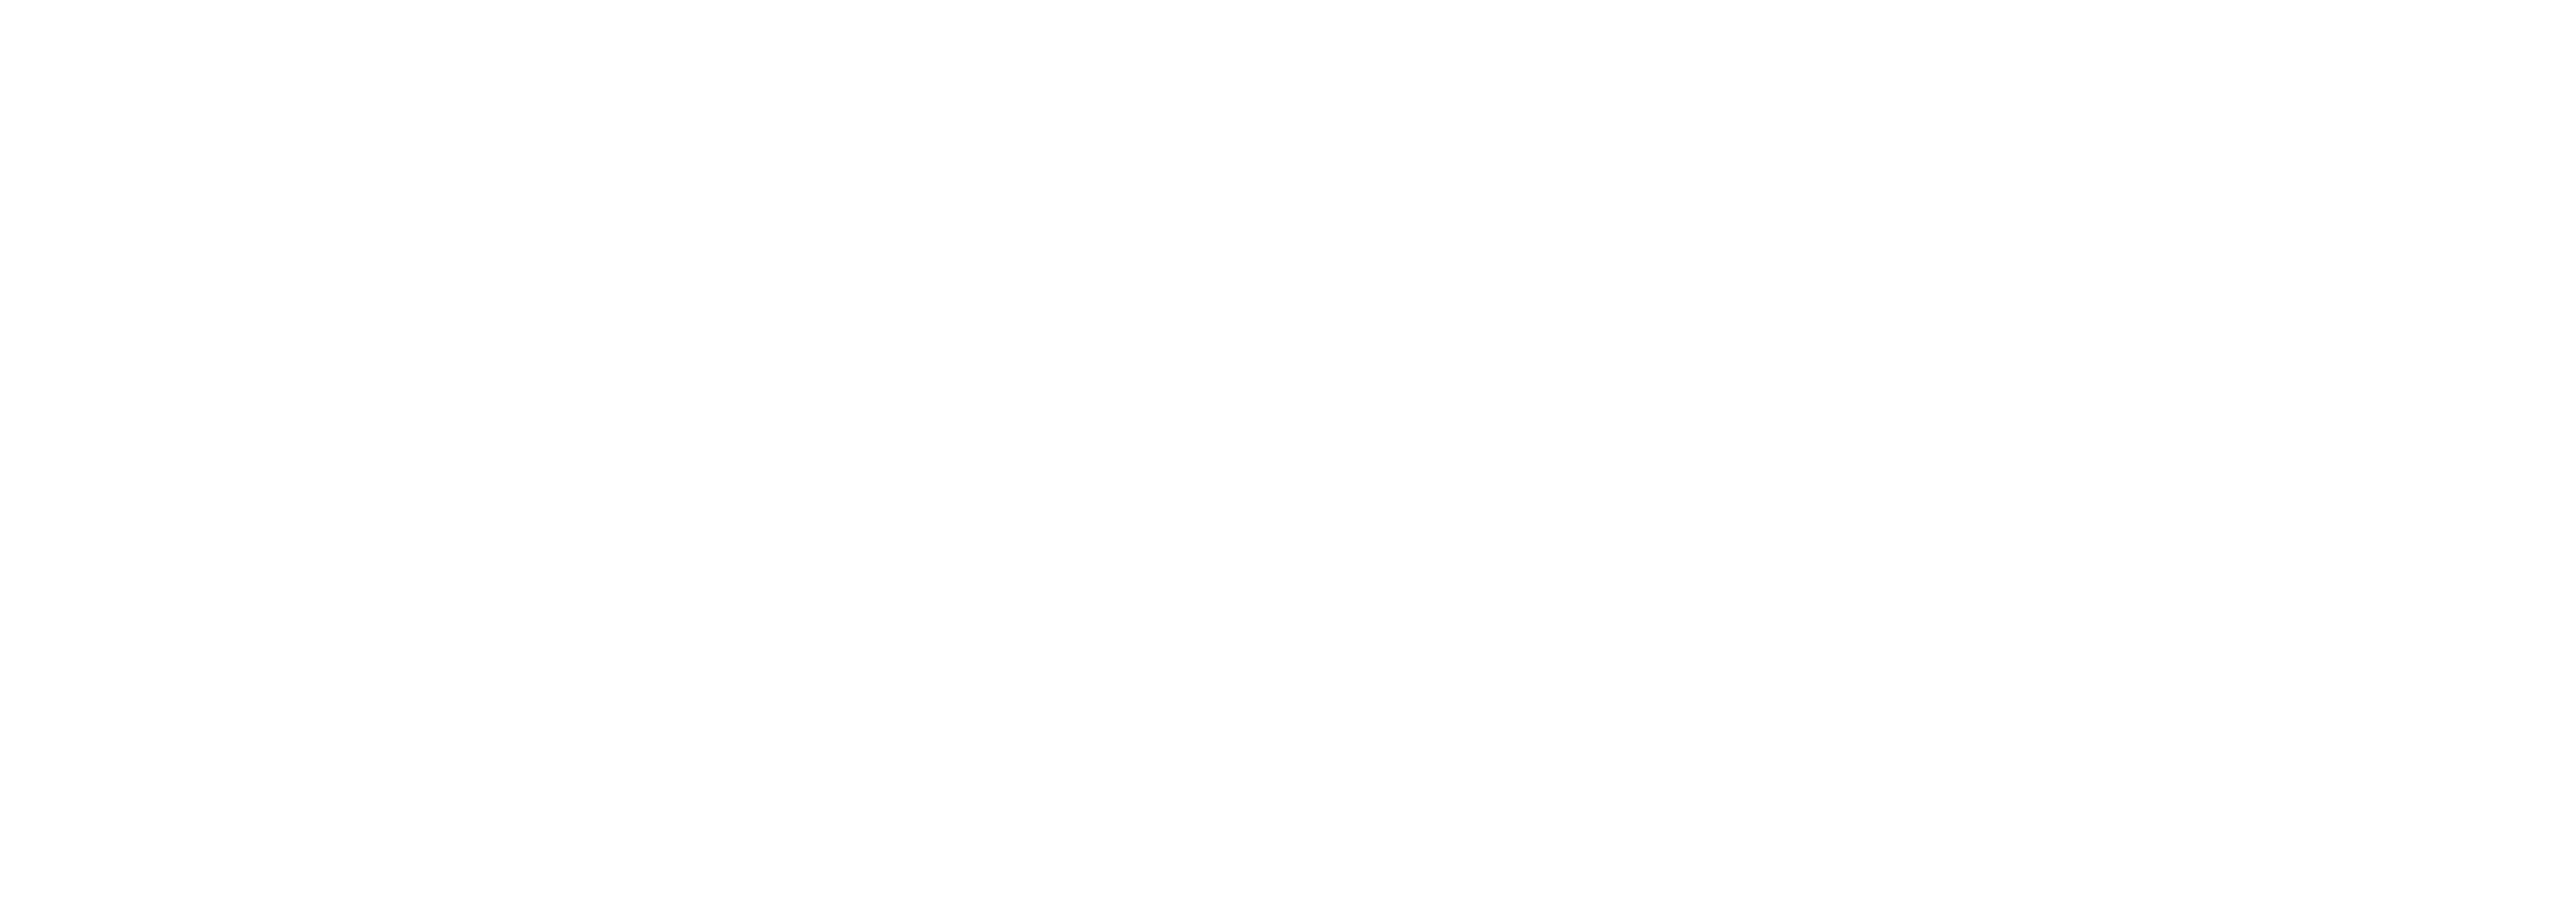 The Quantum Computing Summit Event Logo - White